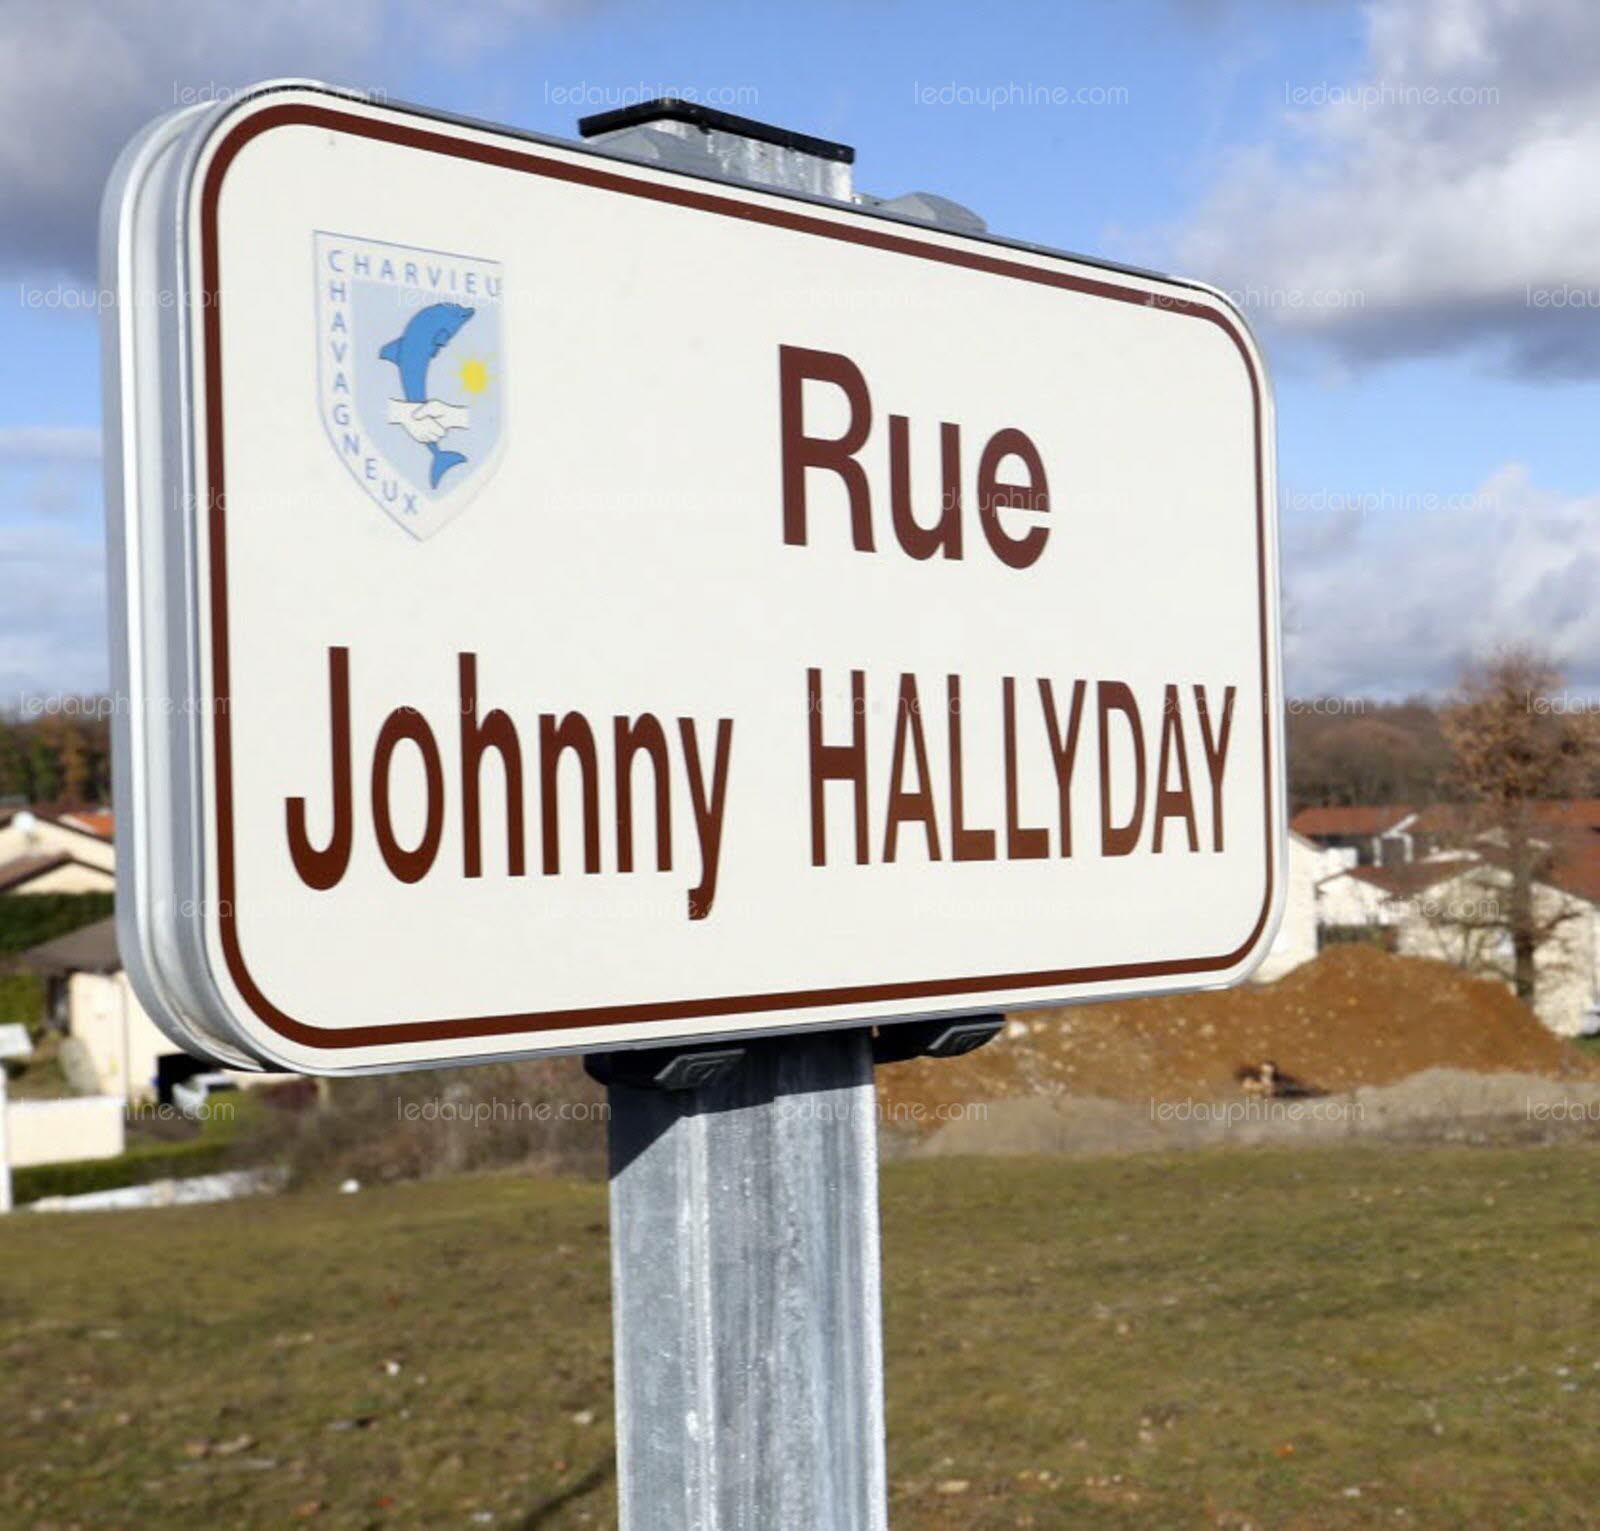 Rue Johnny-Hallyday à Charvieu-Chavagneux : déjà plus de 600 plaques de rue commandées 